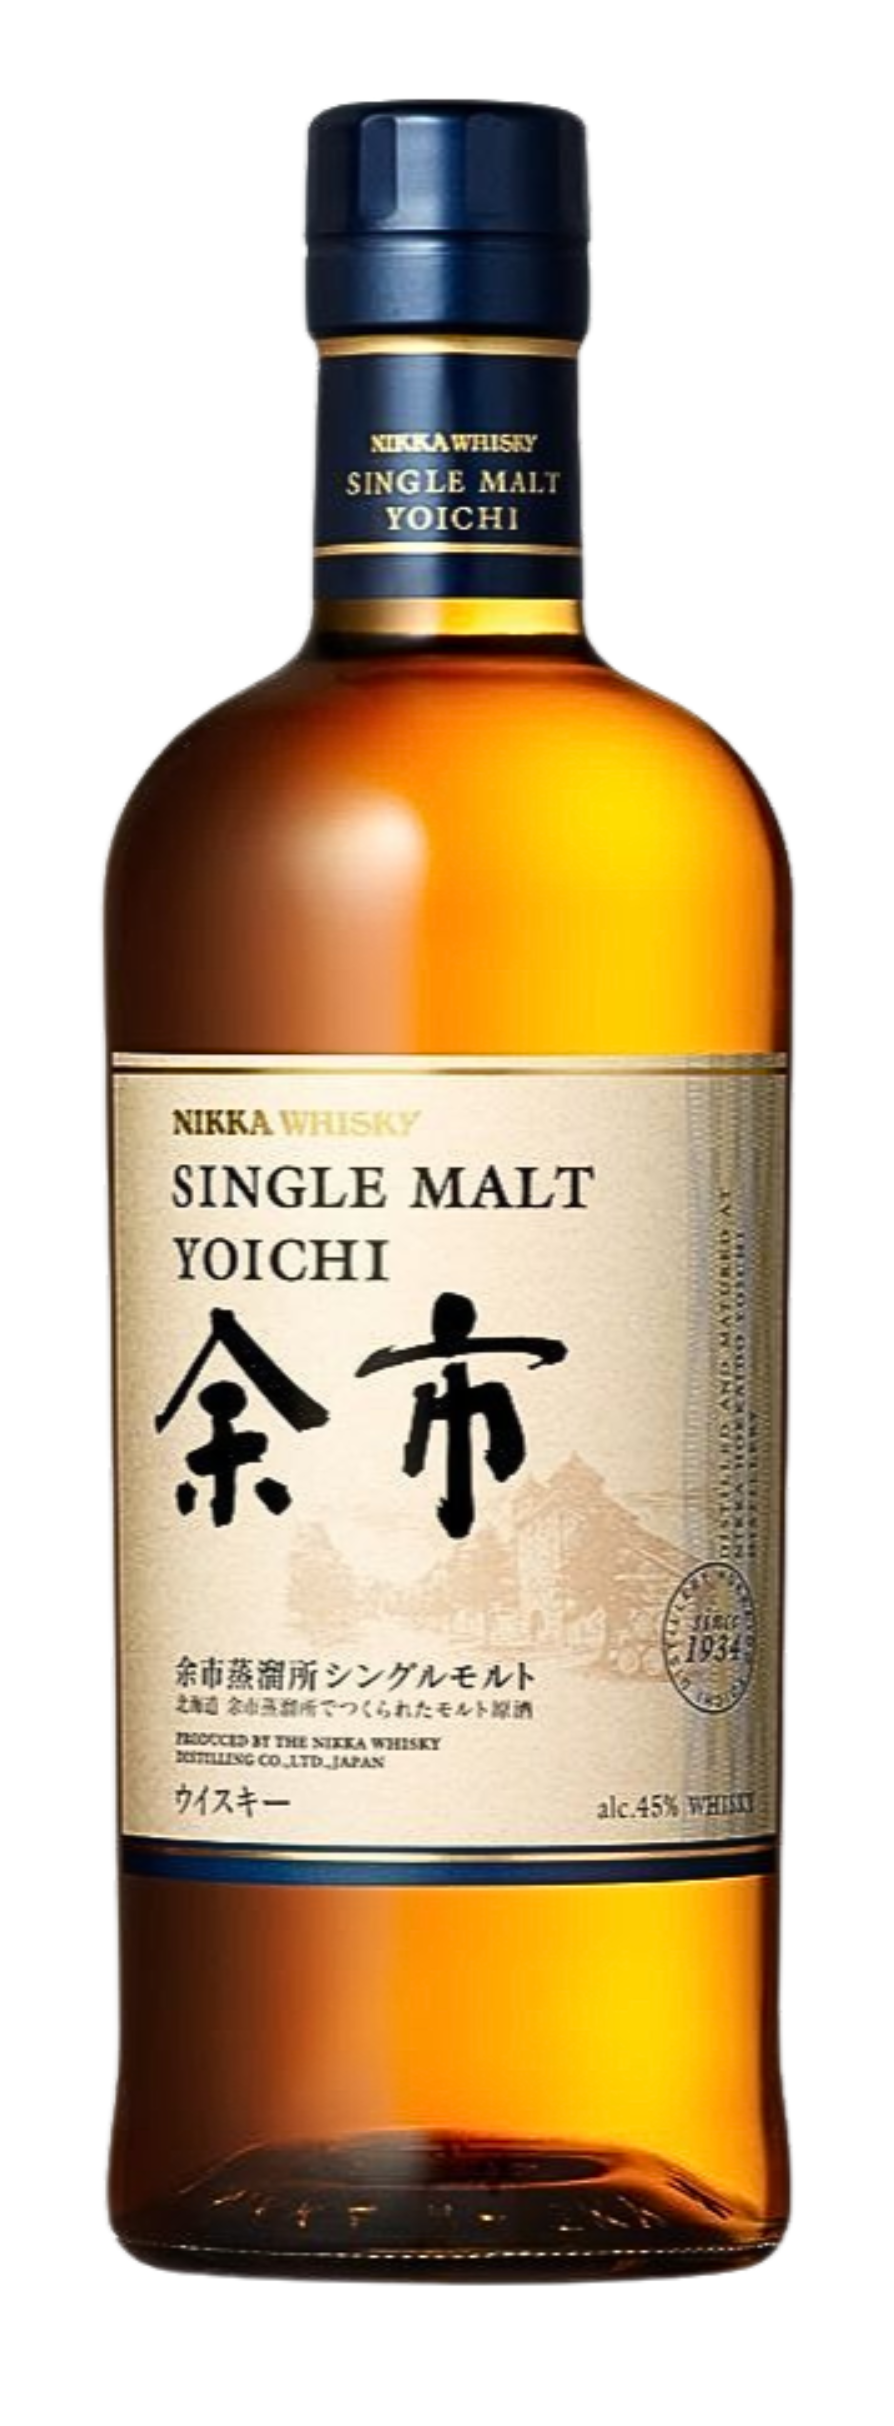 余市單一麥芽威士忌 Yoichi Single Malt Whisky